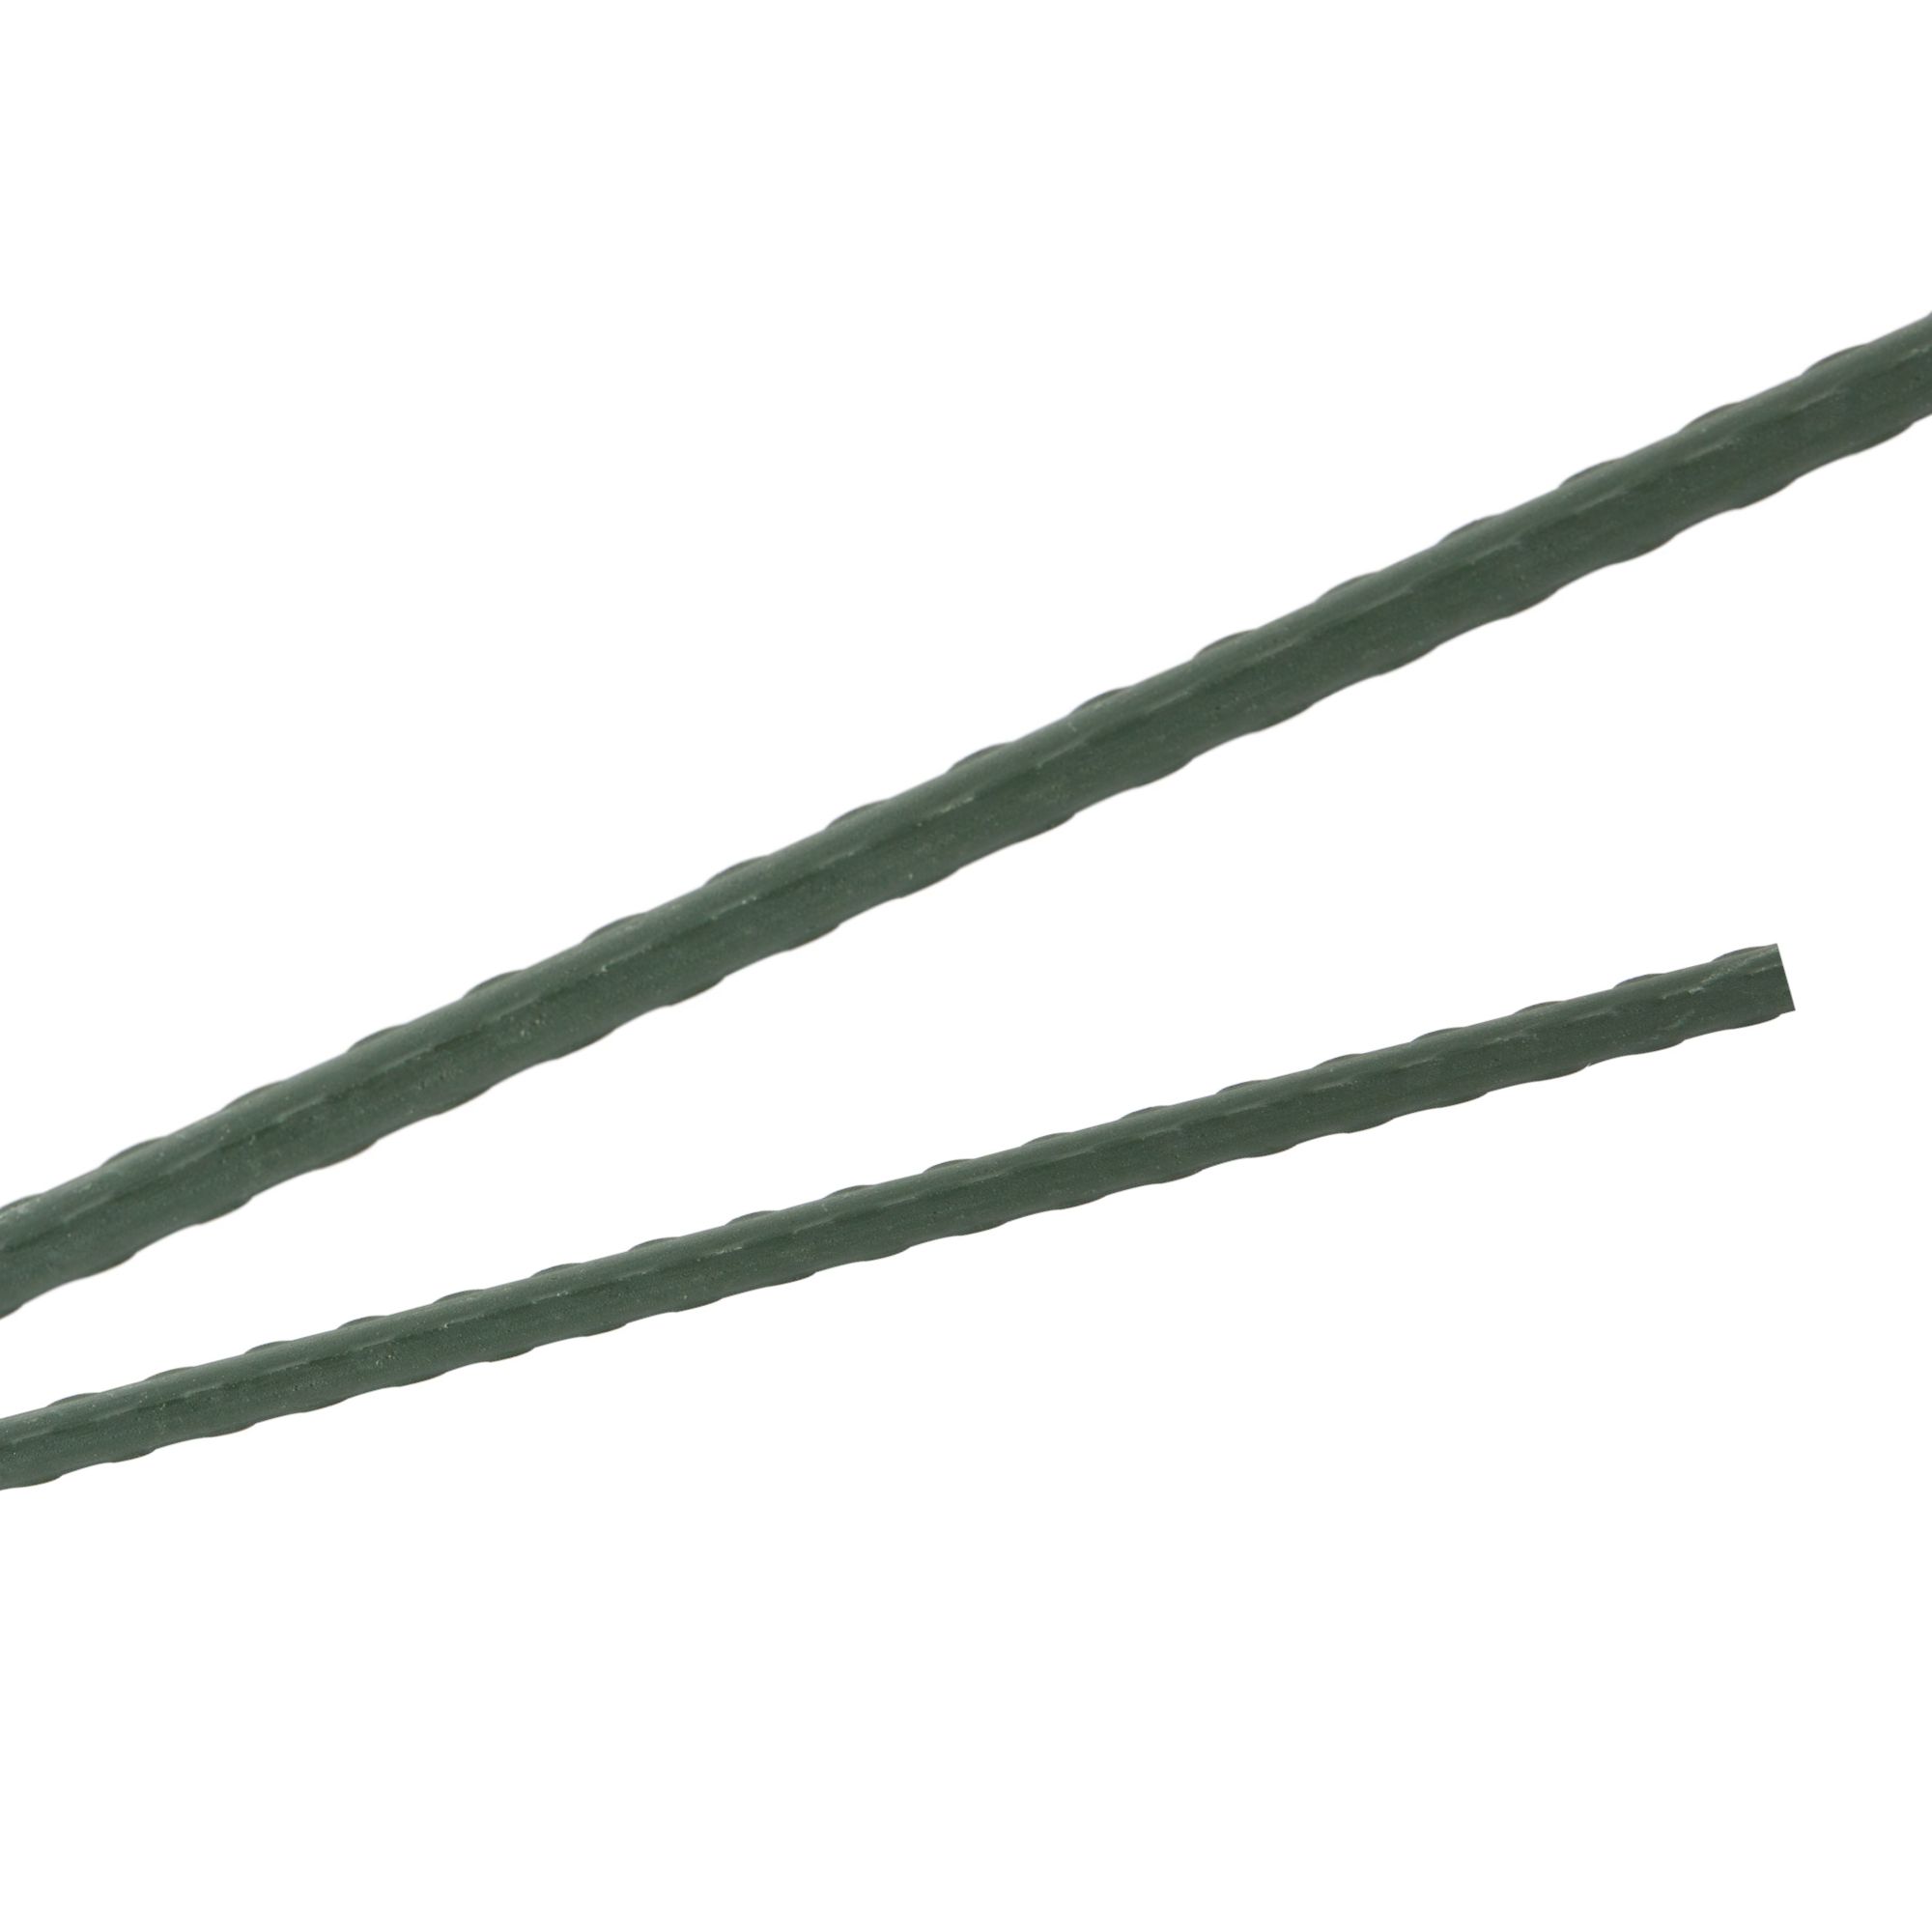 Tyč podpěrná, 16mm, 180cm, kov+PVC, zelená 0.217000 Kg GIGA Sklad20 45659 38